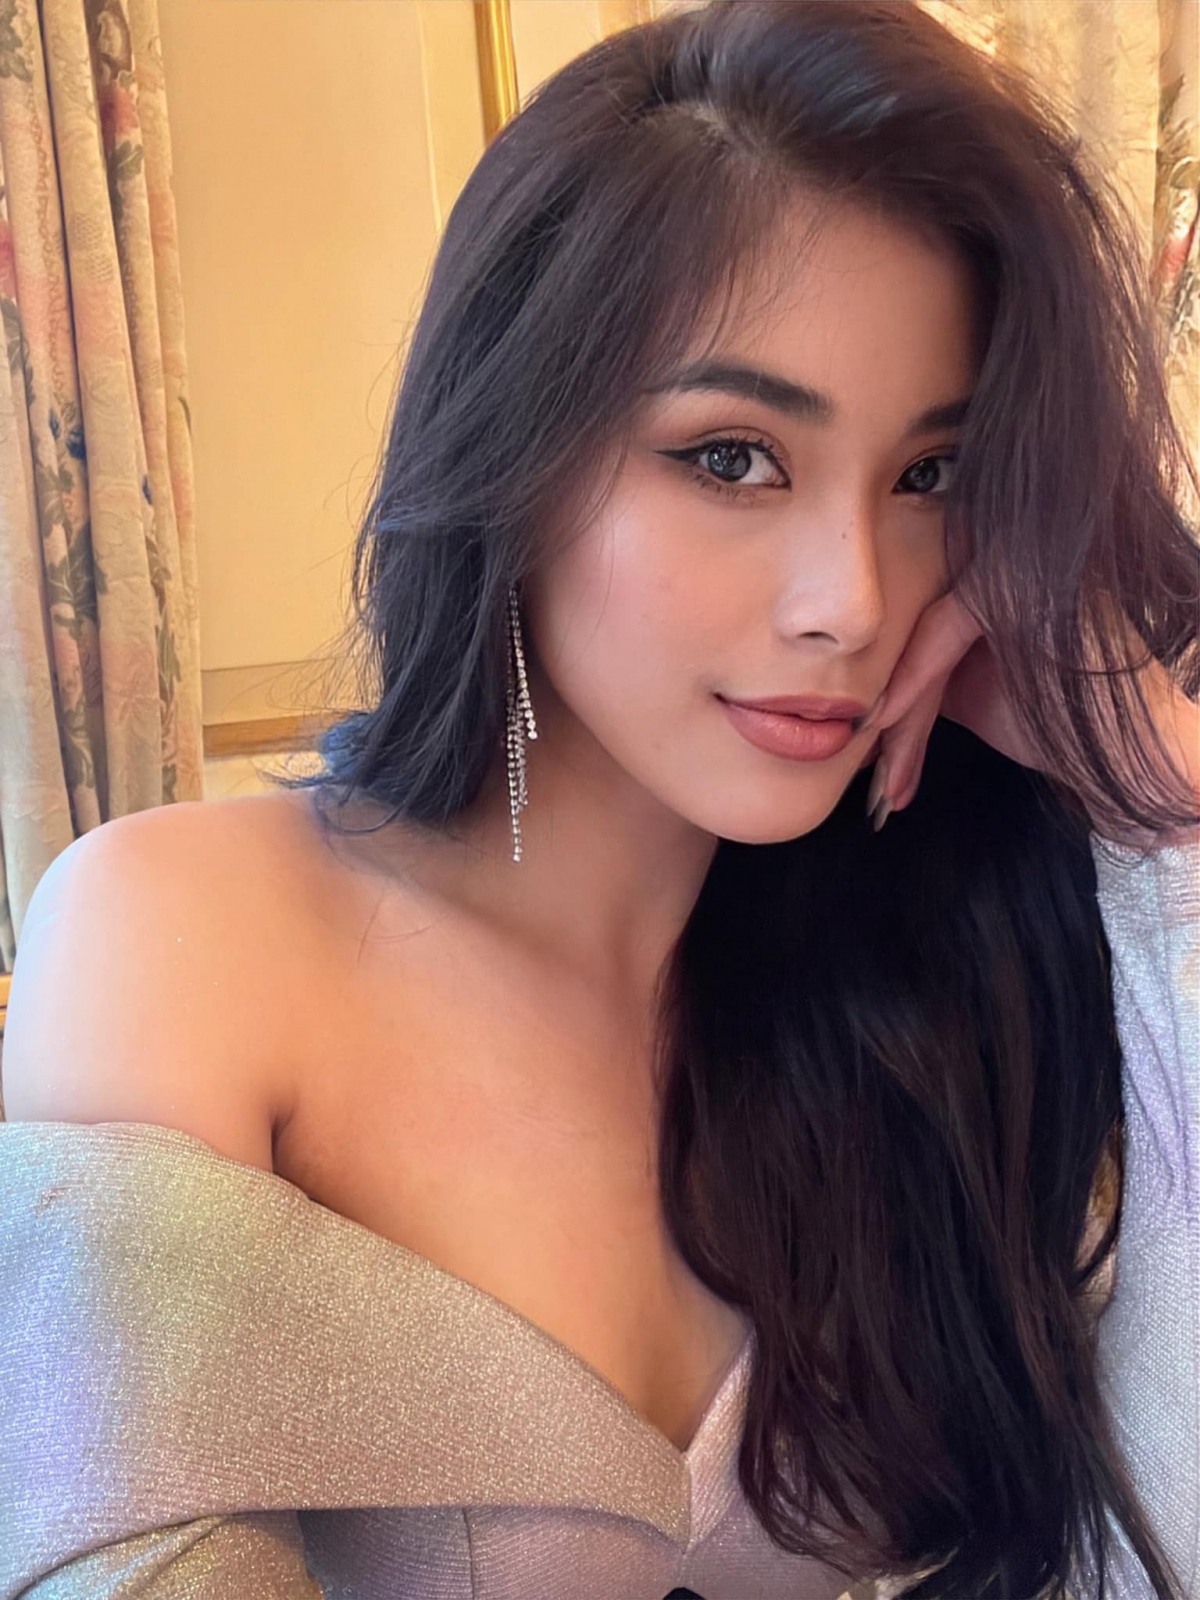 Vẻ đẹp quyến rũ của 'hoa khôi bóng chuyền' lọt top 10 Hoa hậu Hoàn vũ Việt Nam